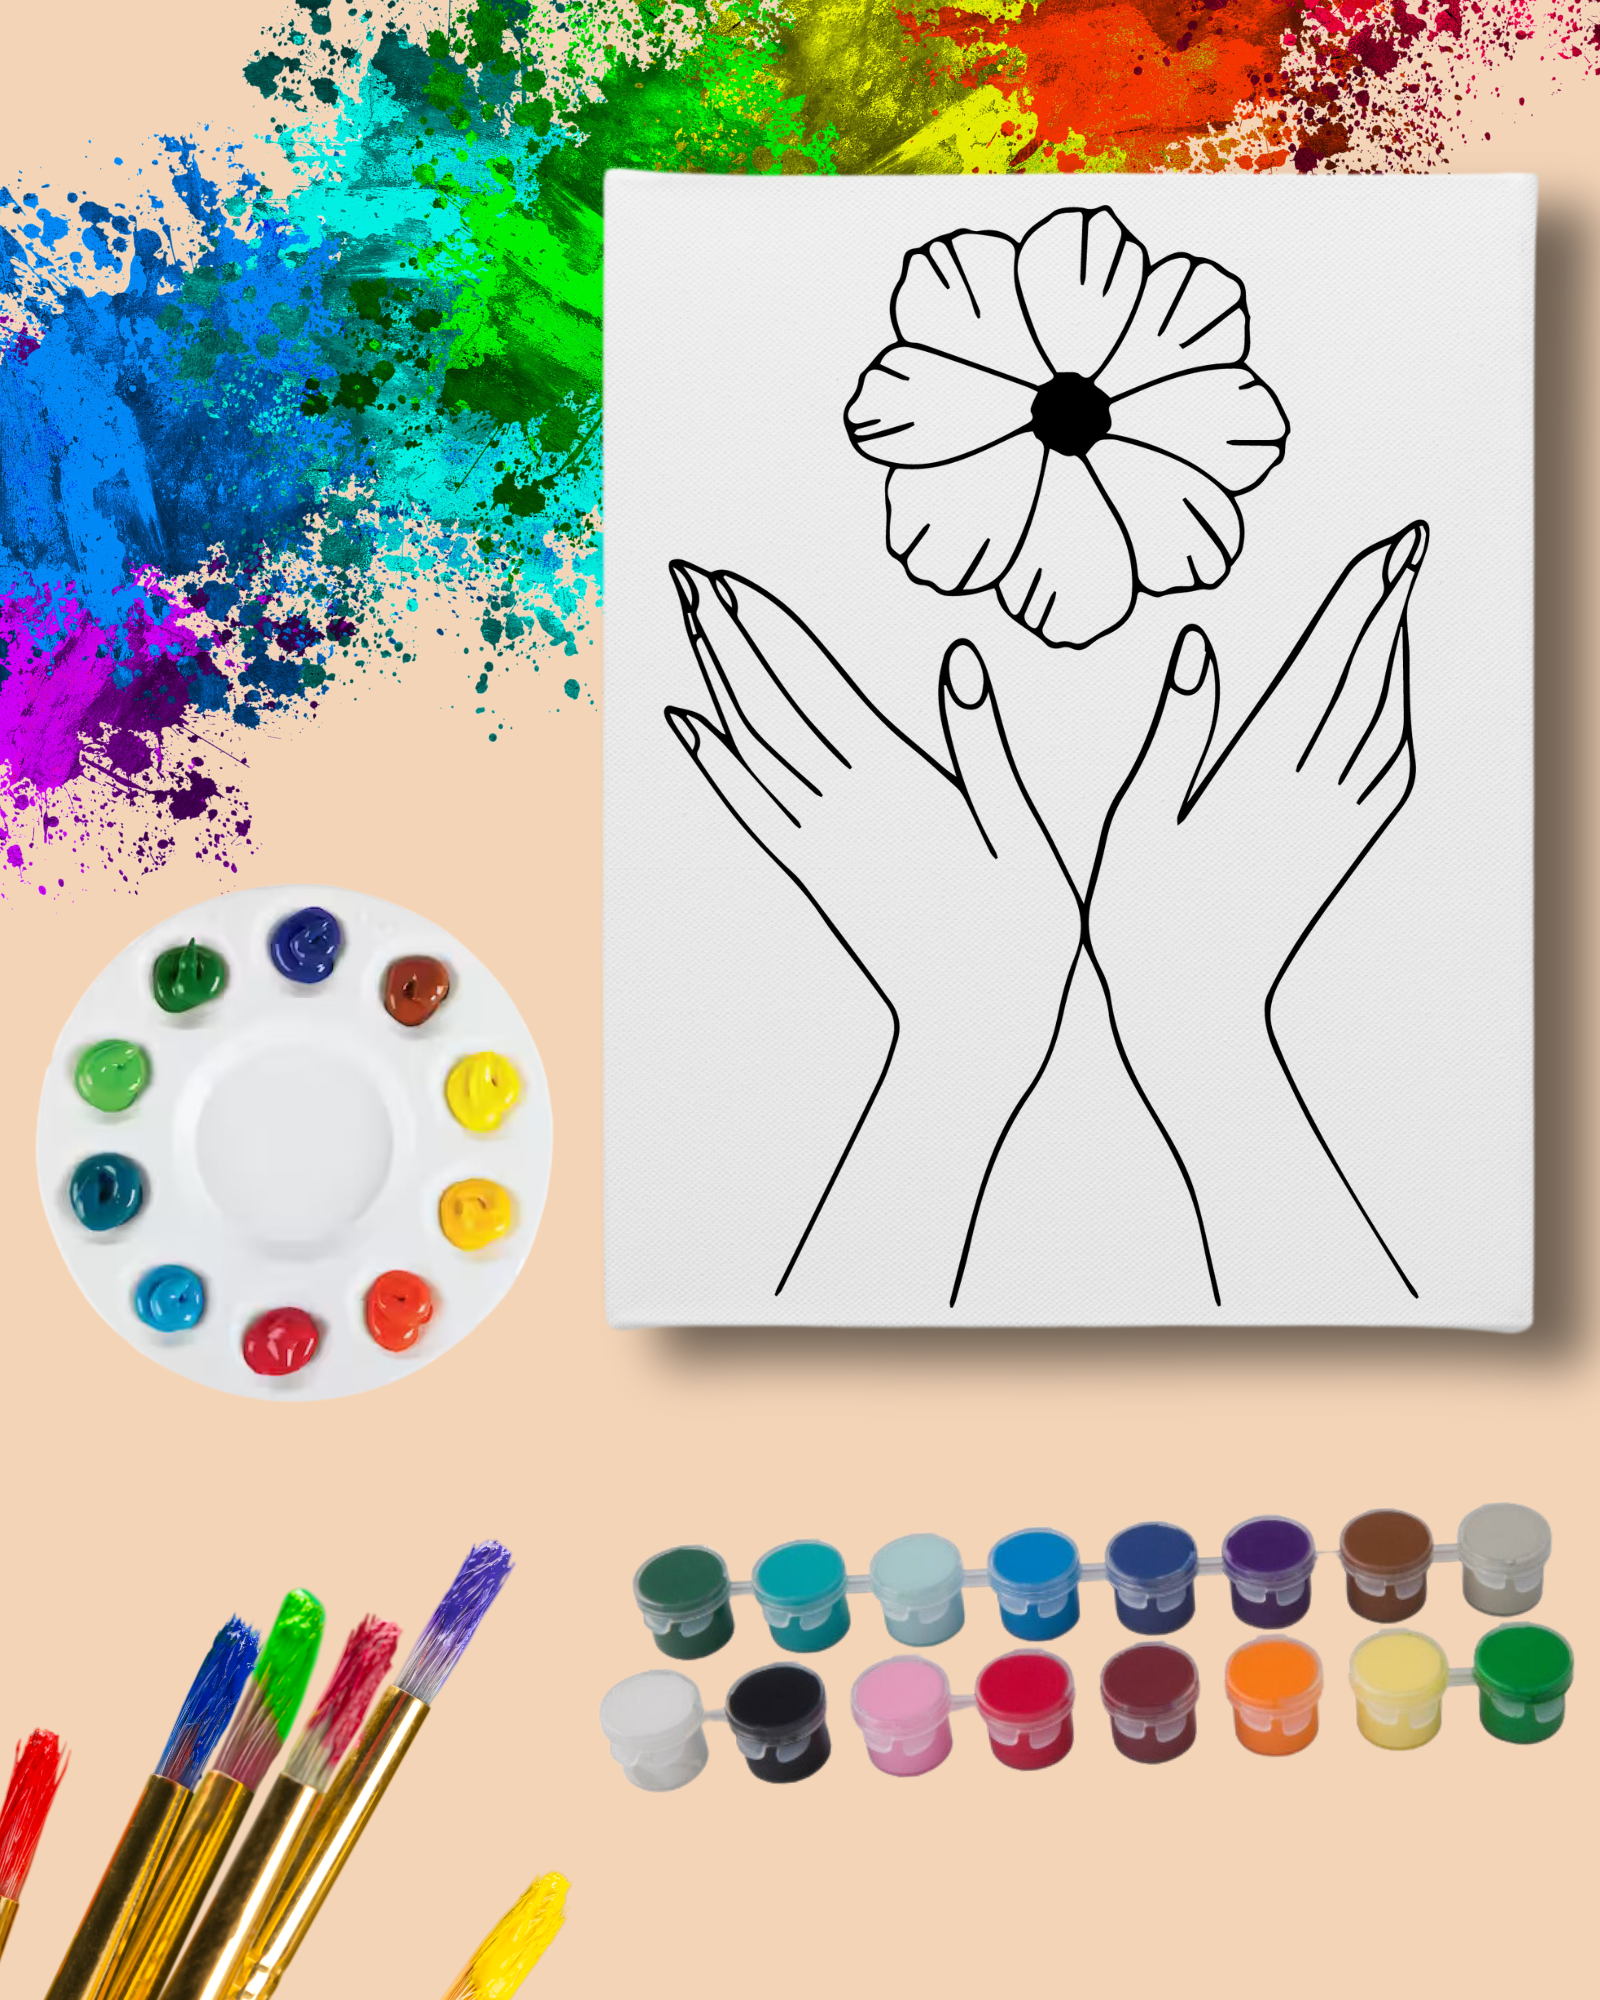 DIY Paint Party Kit - 11x14 Canvas - Hands & Flower